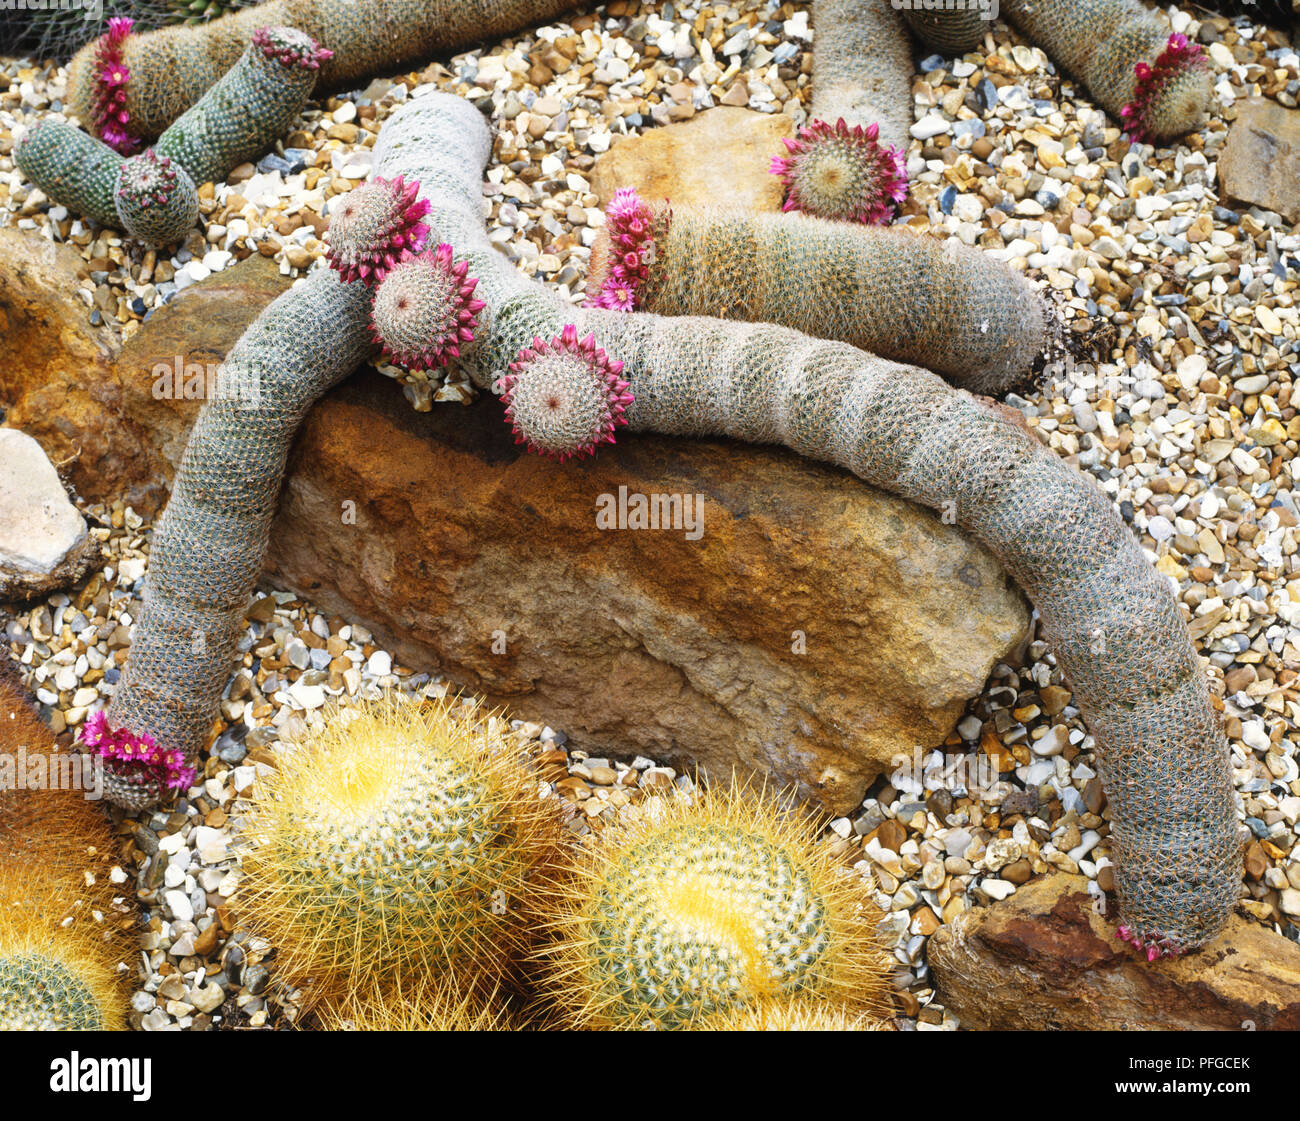 Damm der Lange snaking Stängel von Mammilaria matudae (riesige Schlange oder Kriechen cactus Log), mit rosa Blumen um Kronen Stockfoto